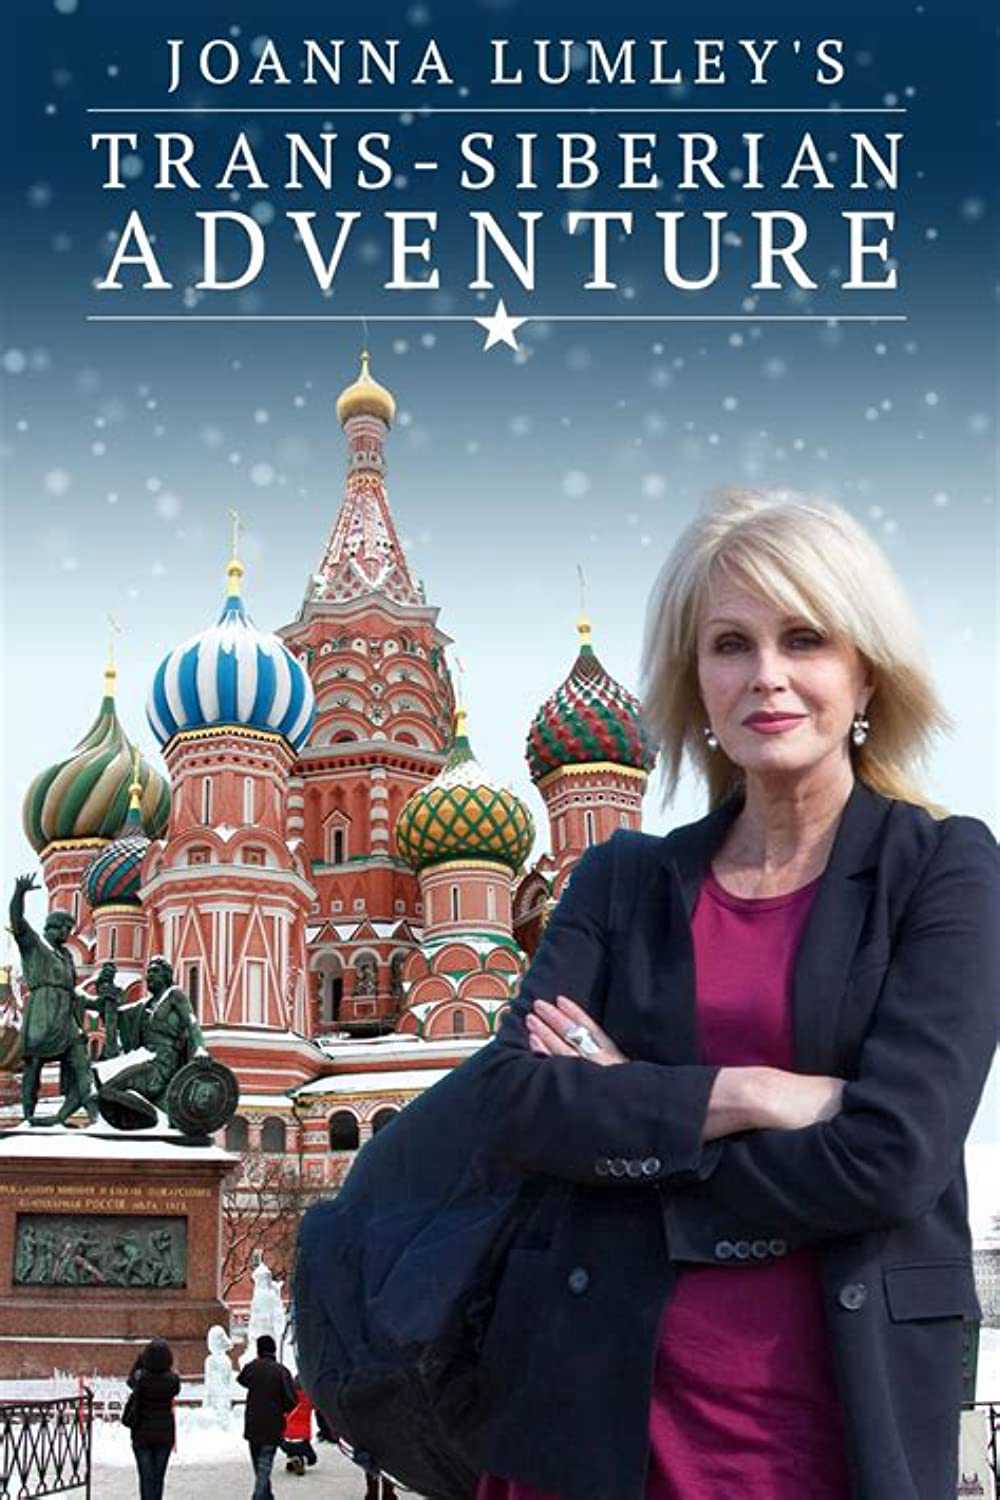 Joanna lumley: hành trình xuyên siberia - Joanna lumley's trans-siberian adventure